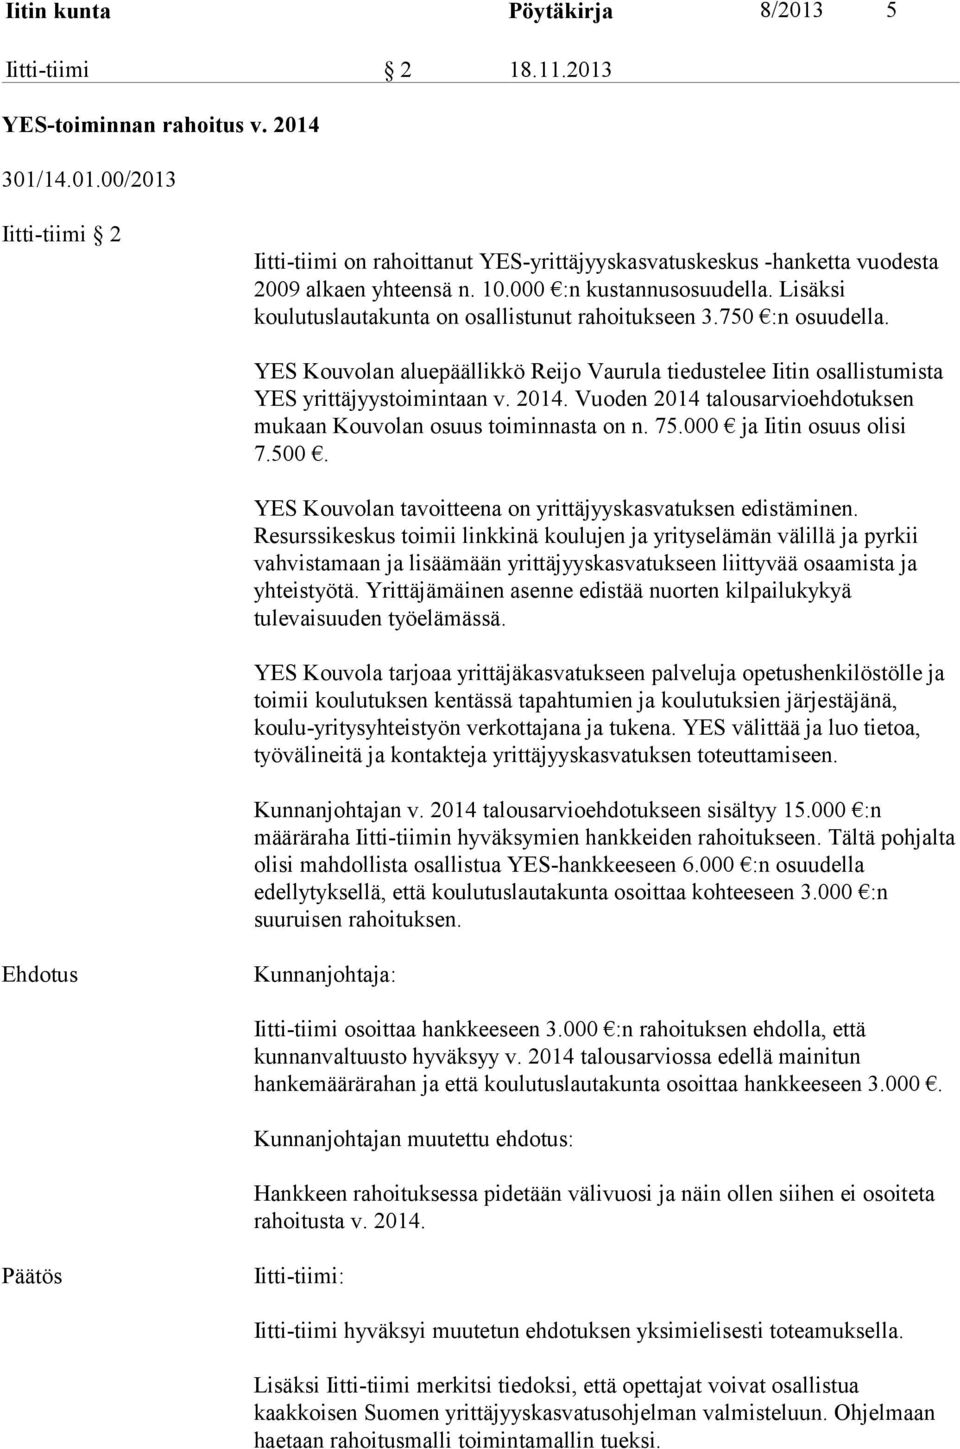 YES Kouvolan aluepäällikkö Reijo Vaurula tiedustelee Iitin osallistumista YES yrittäjyystoimintaan v. 2014. Vuoden 2014 talousarvioehdotuksen mukaan Kouvolan osuus toiminnasta on n. 75.